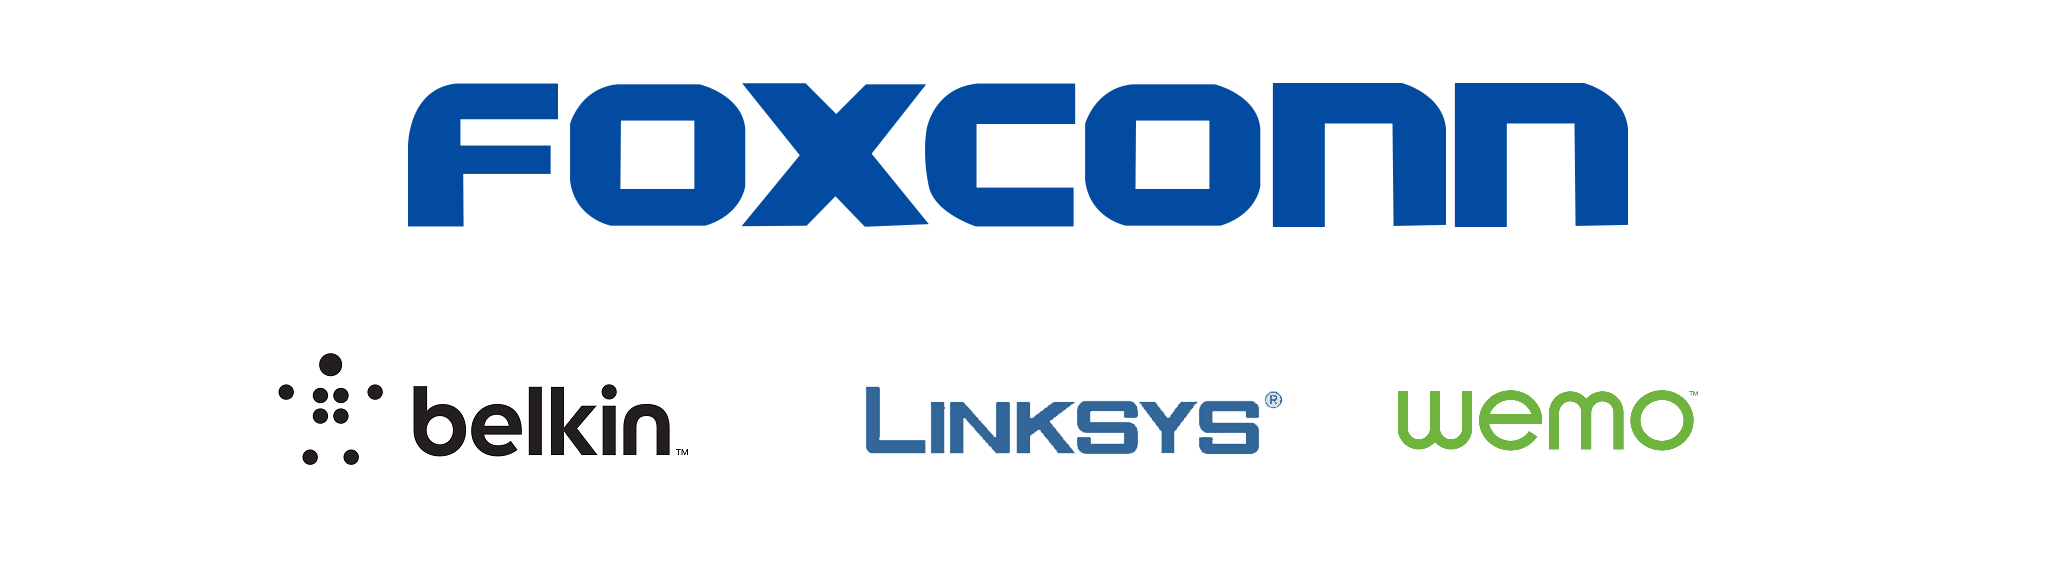 foxconn-logo.png